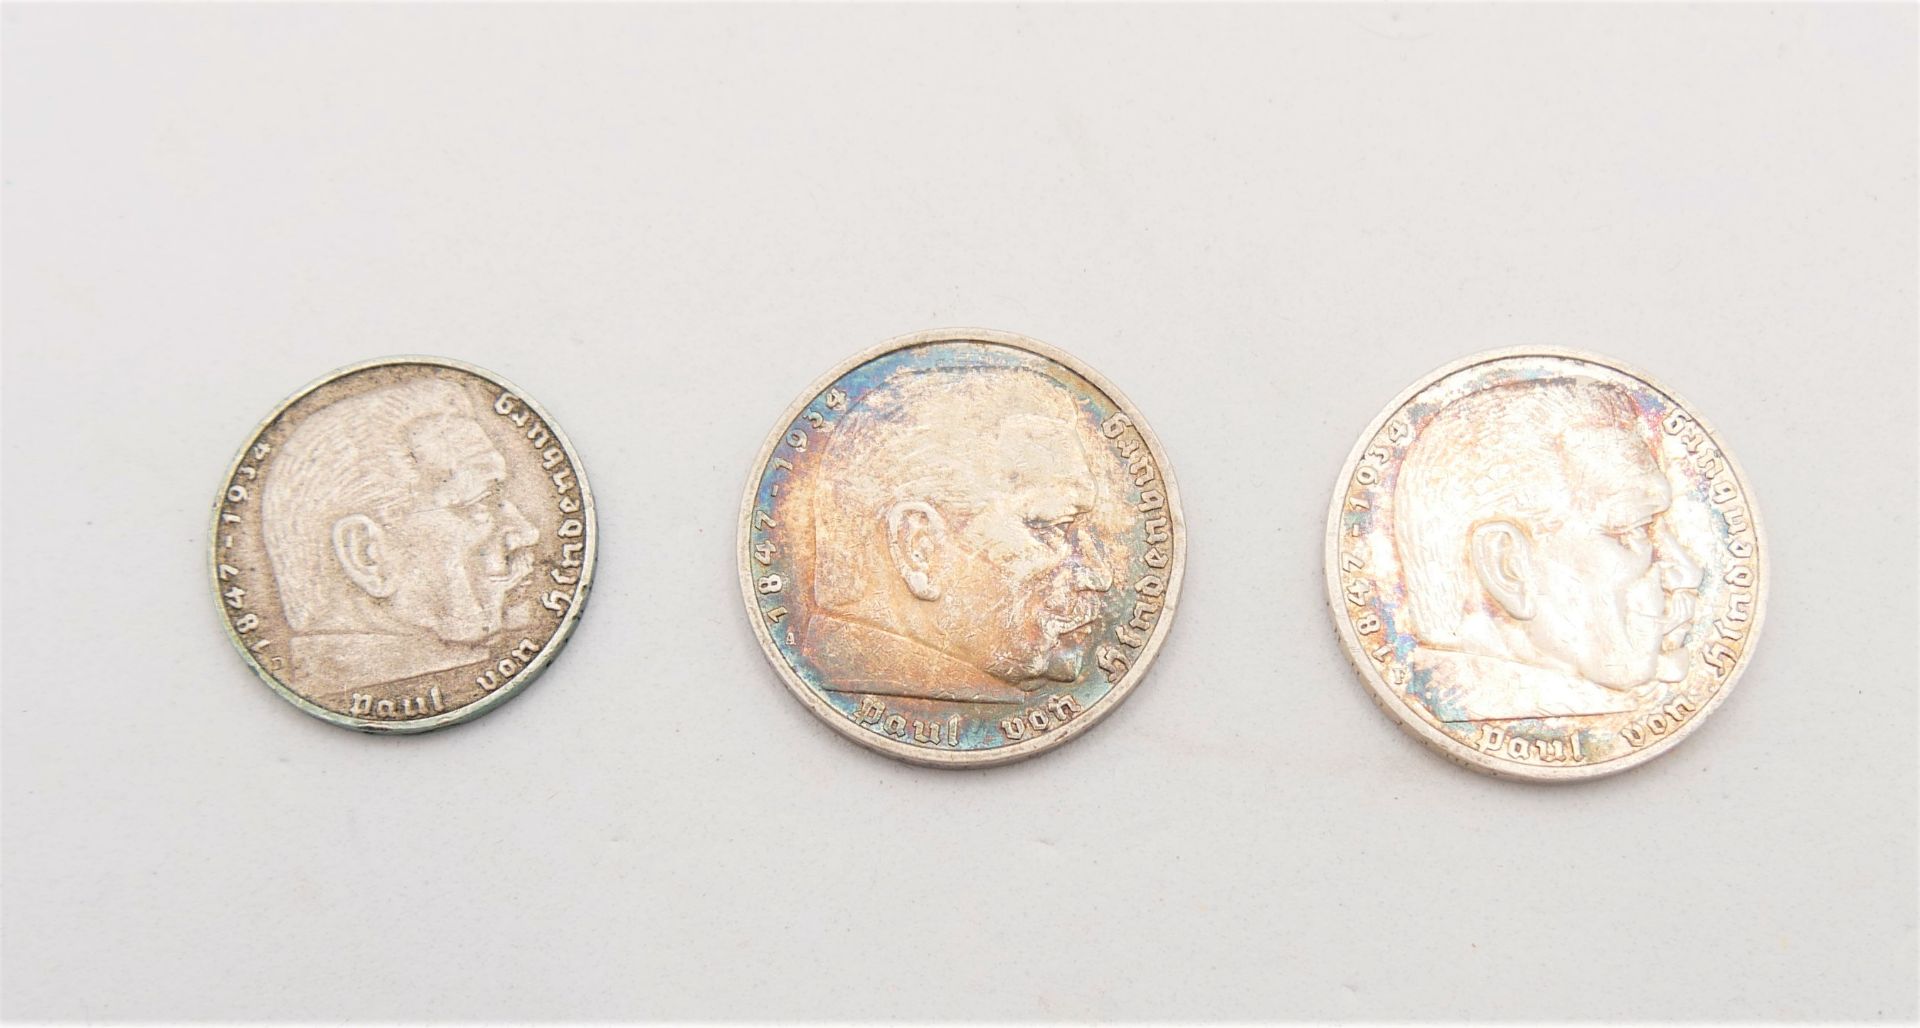 Drittes Reich, 3 Silbermünzen, 2x 5 Mark sowie 1x 2 Mark. - Bild 2 aus 2